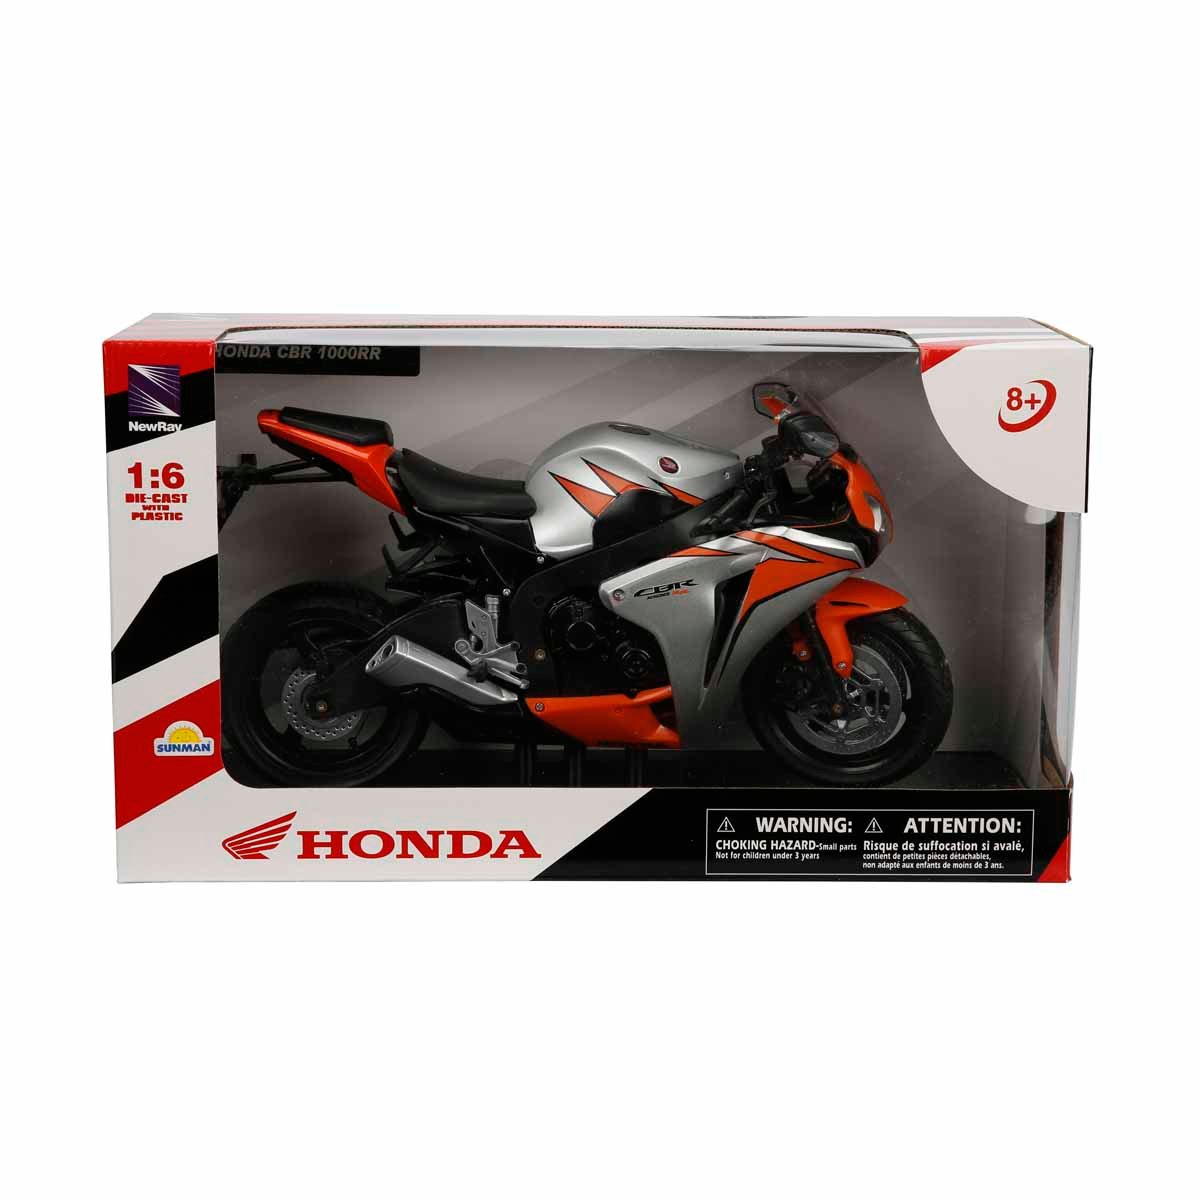 Motocicleta metalica, New Ray, Honda CBR 1000RR 2010, 1:6